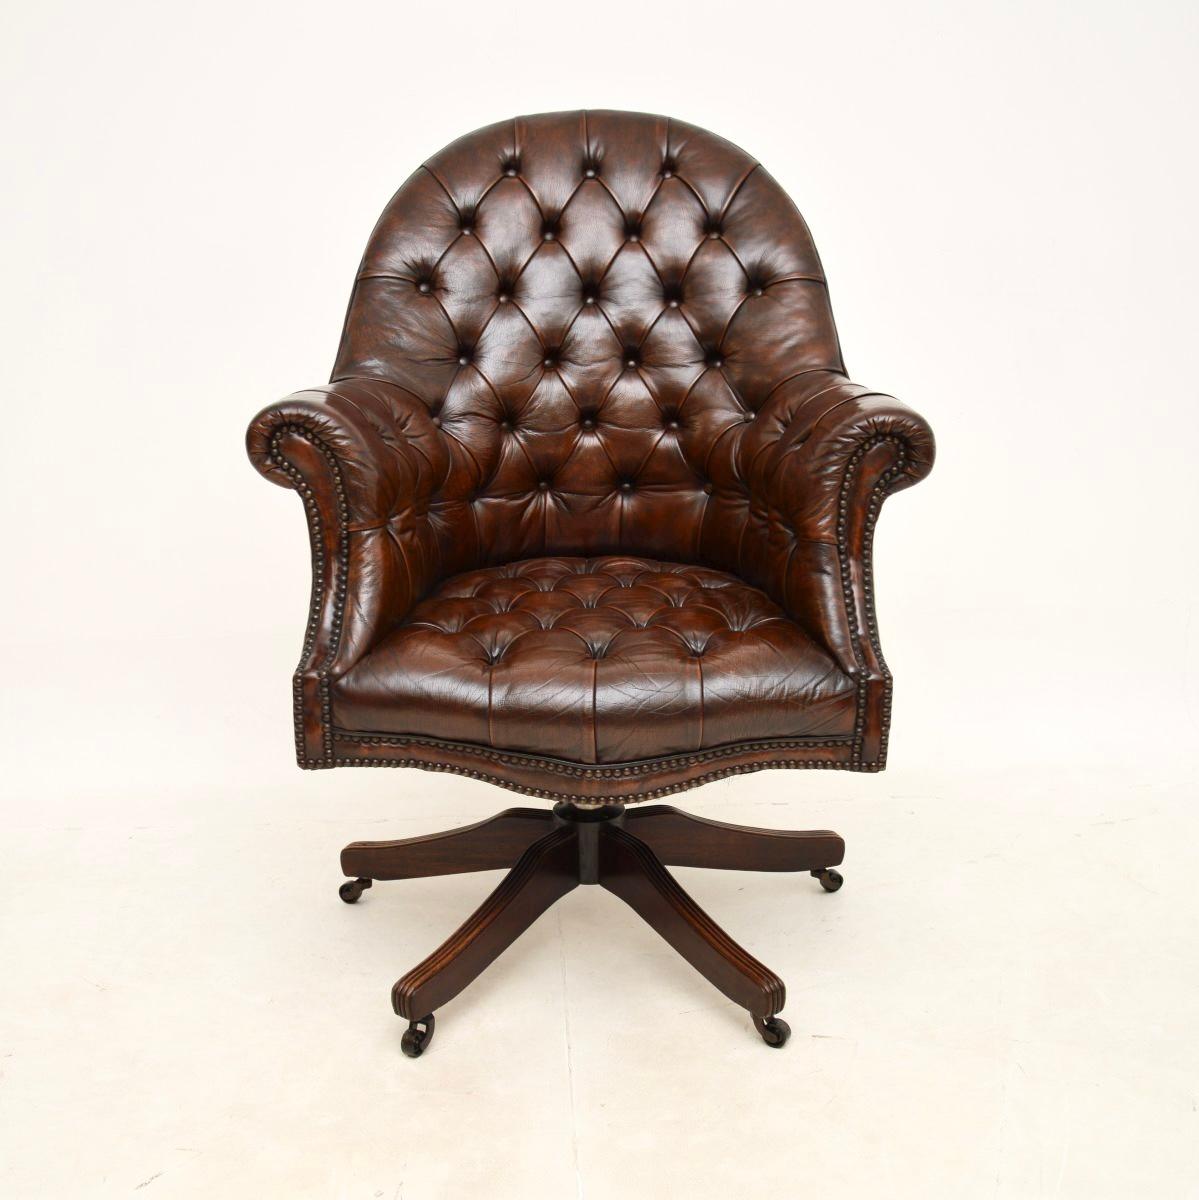 Une chaise de bureau pivotante en cuir de style victorien, élégante et extrêmement bien fabriquée. Il a été fabriqué en Angleterre et date des années 1950.

Il est d'une qualité exceptionnelle, ses proportions sont généreuses et il est extrêmement